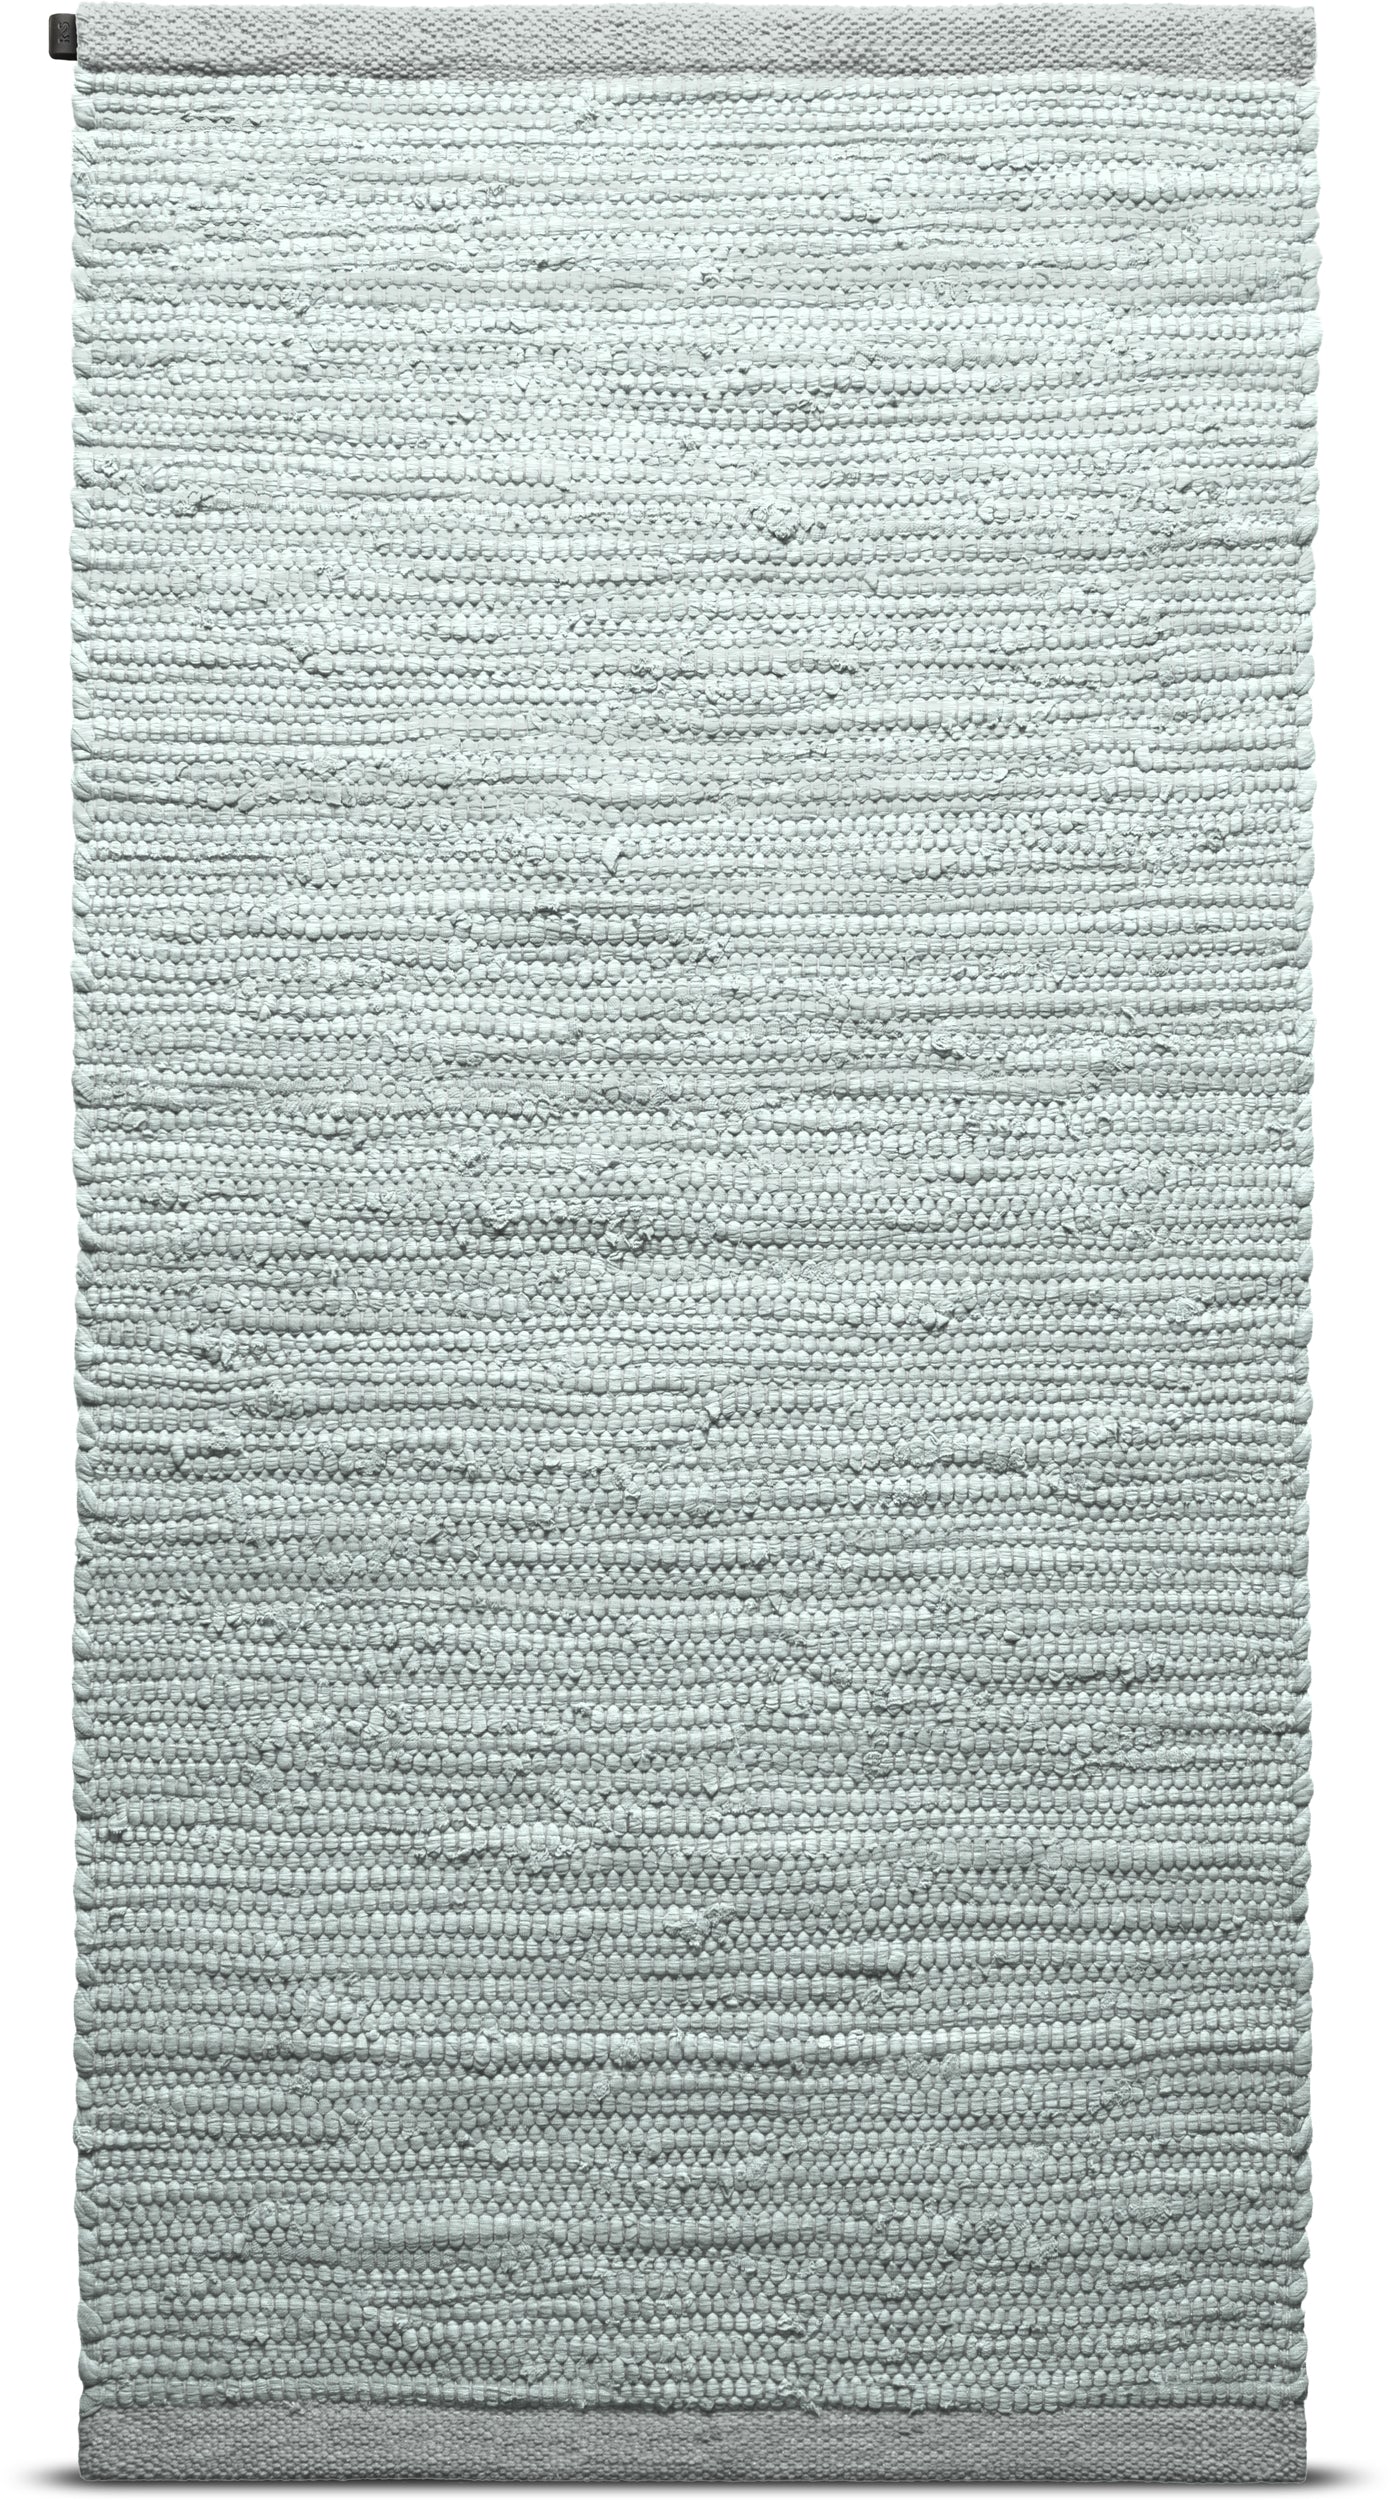 Tappeto in cotone solido 65 x 135 cm, menta